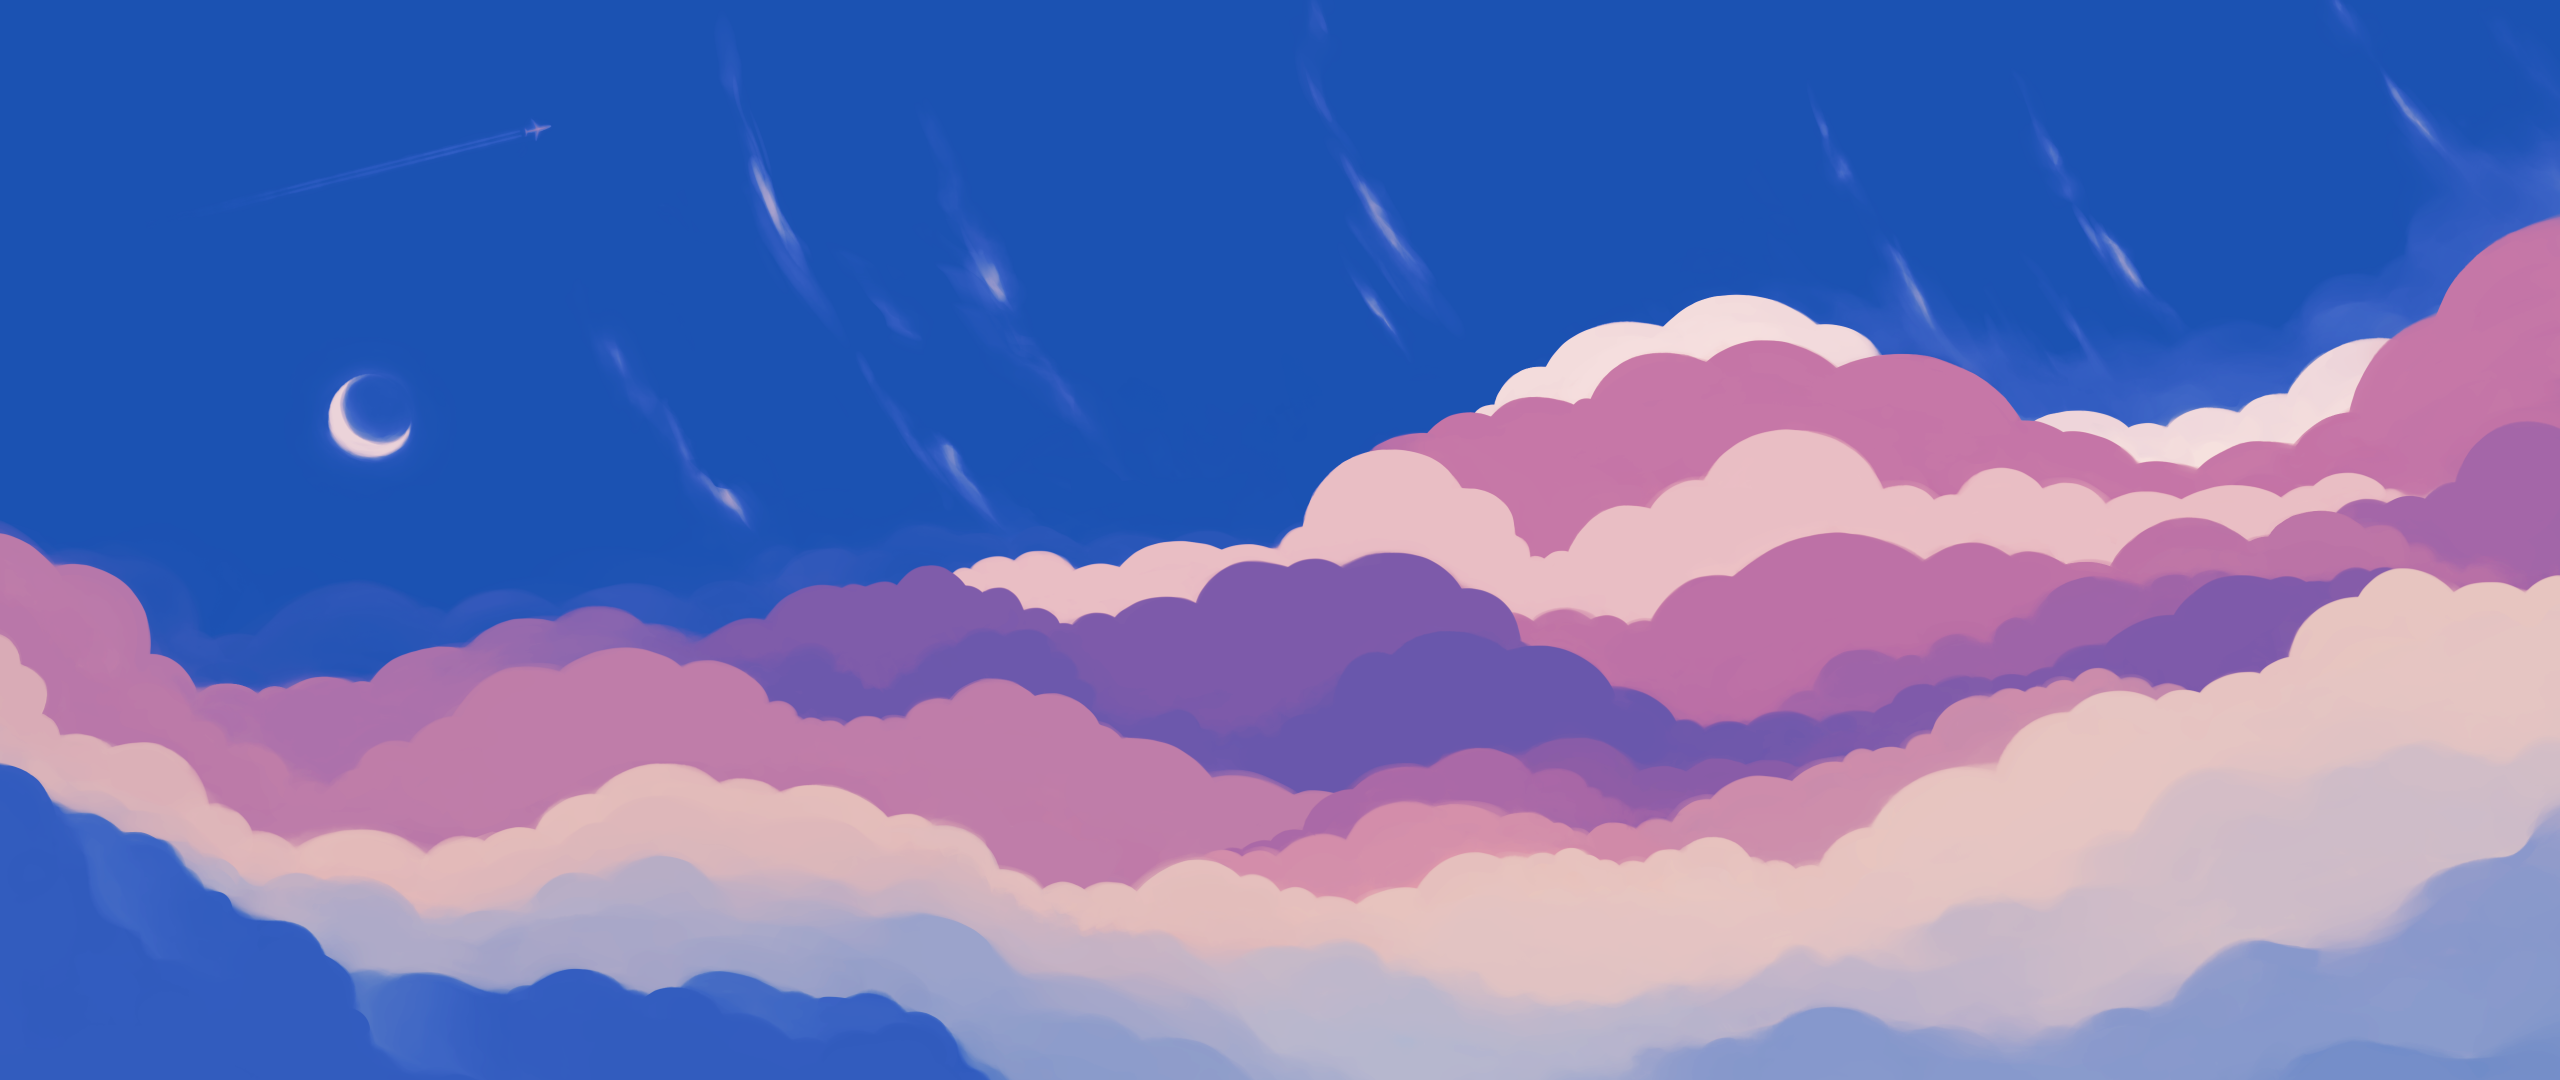 Blue Sky Wallpaper 4K, Half moon, Crescent Moon, Clouds